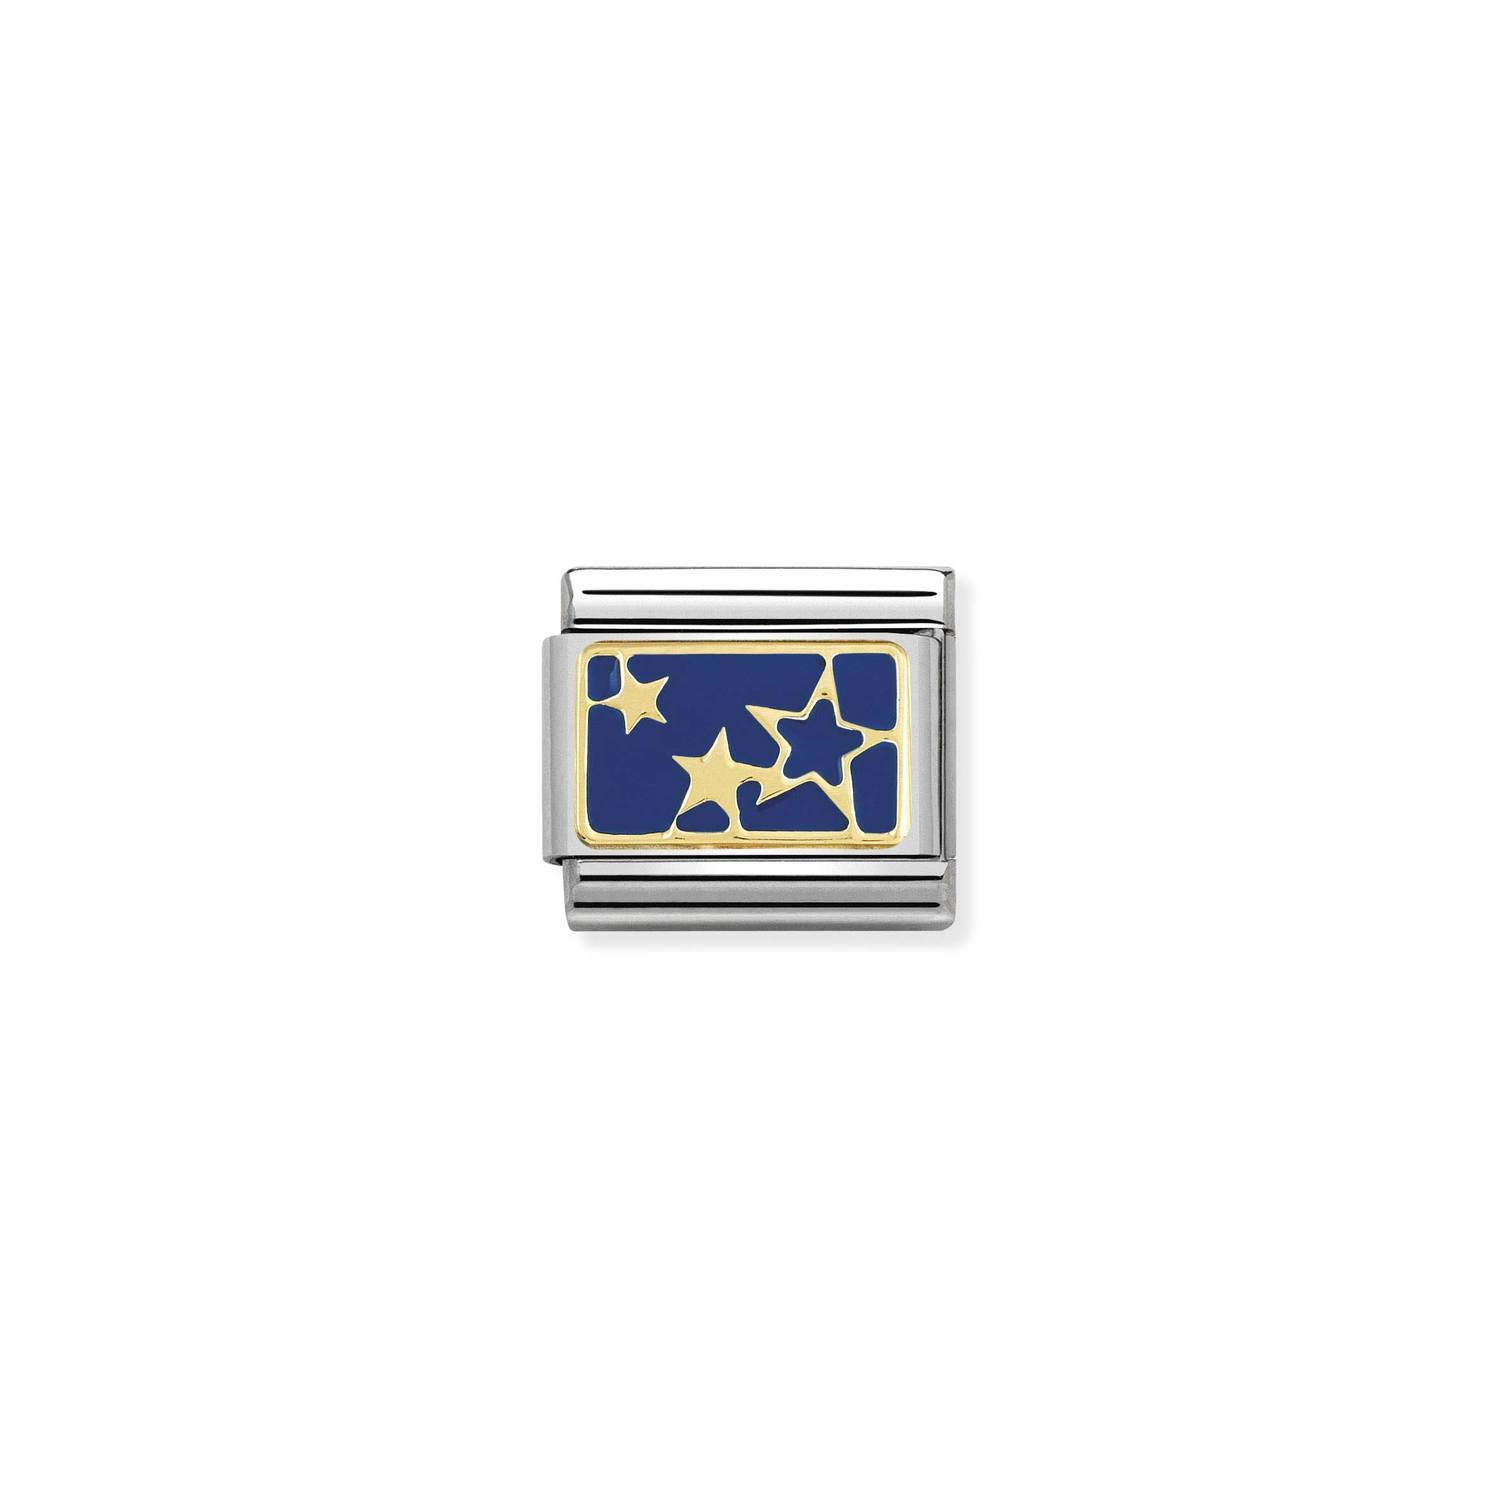 Ogniwo / link do bransolety Nomination Composable stalowe ze złotem 18k gwiazdy (OG-001934)